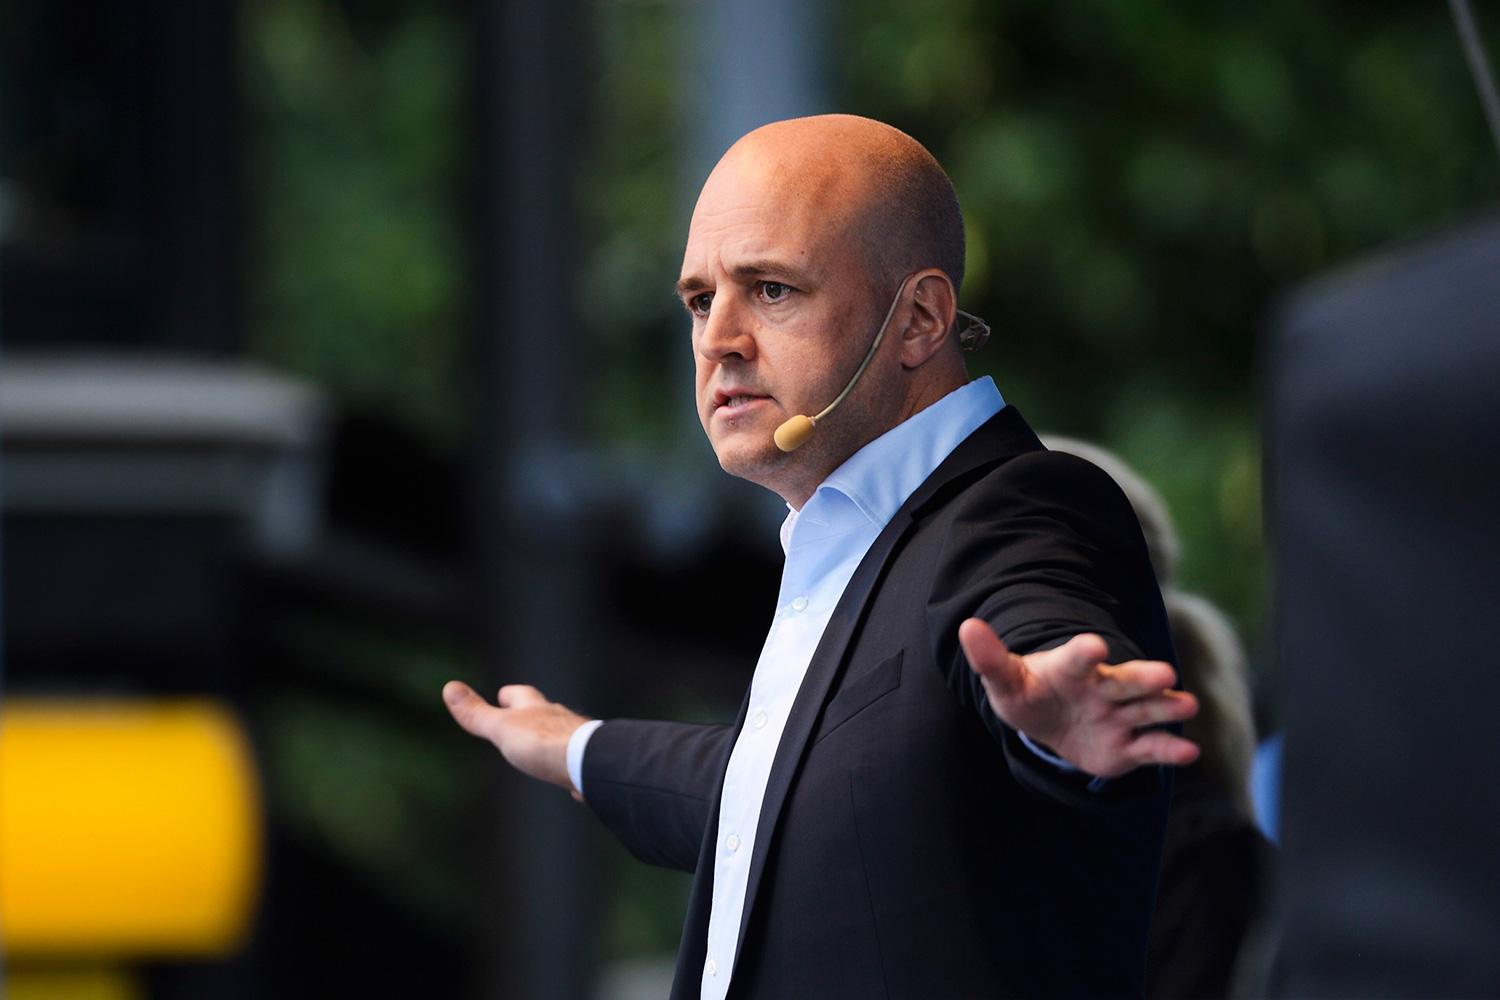 BAD OM SOLIDARITET Fredrik Reinfeldt inledde valrörelsen med att vädja om tålamod med den stora flyktingström som väntar Sverige. Men hans egna kommunpolitiker kräver ökade resurser för att klara en sådan situation.